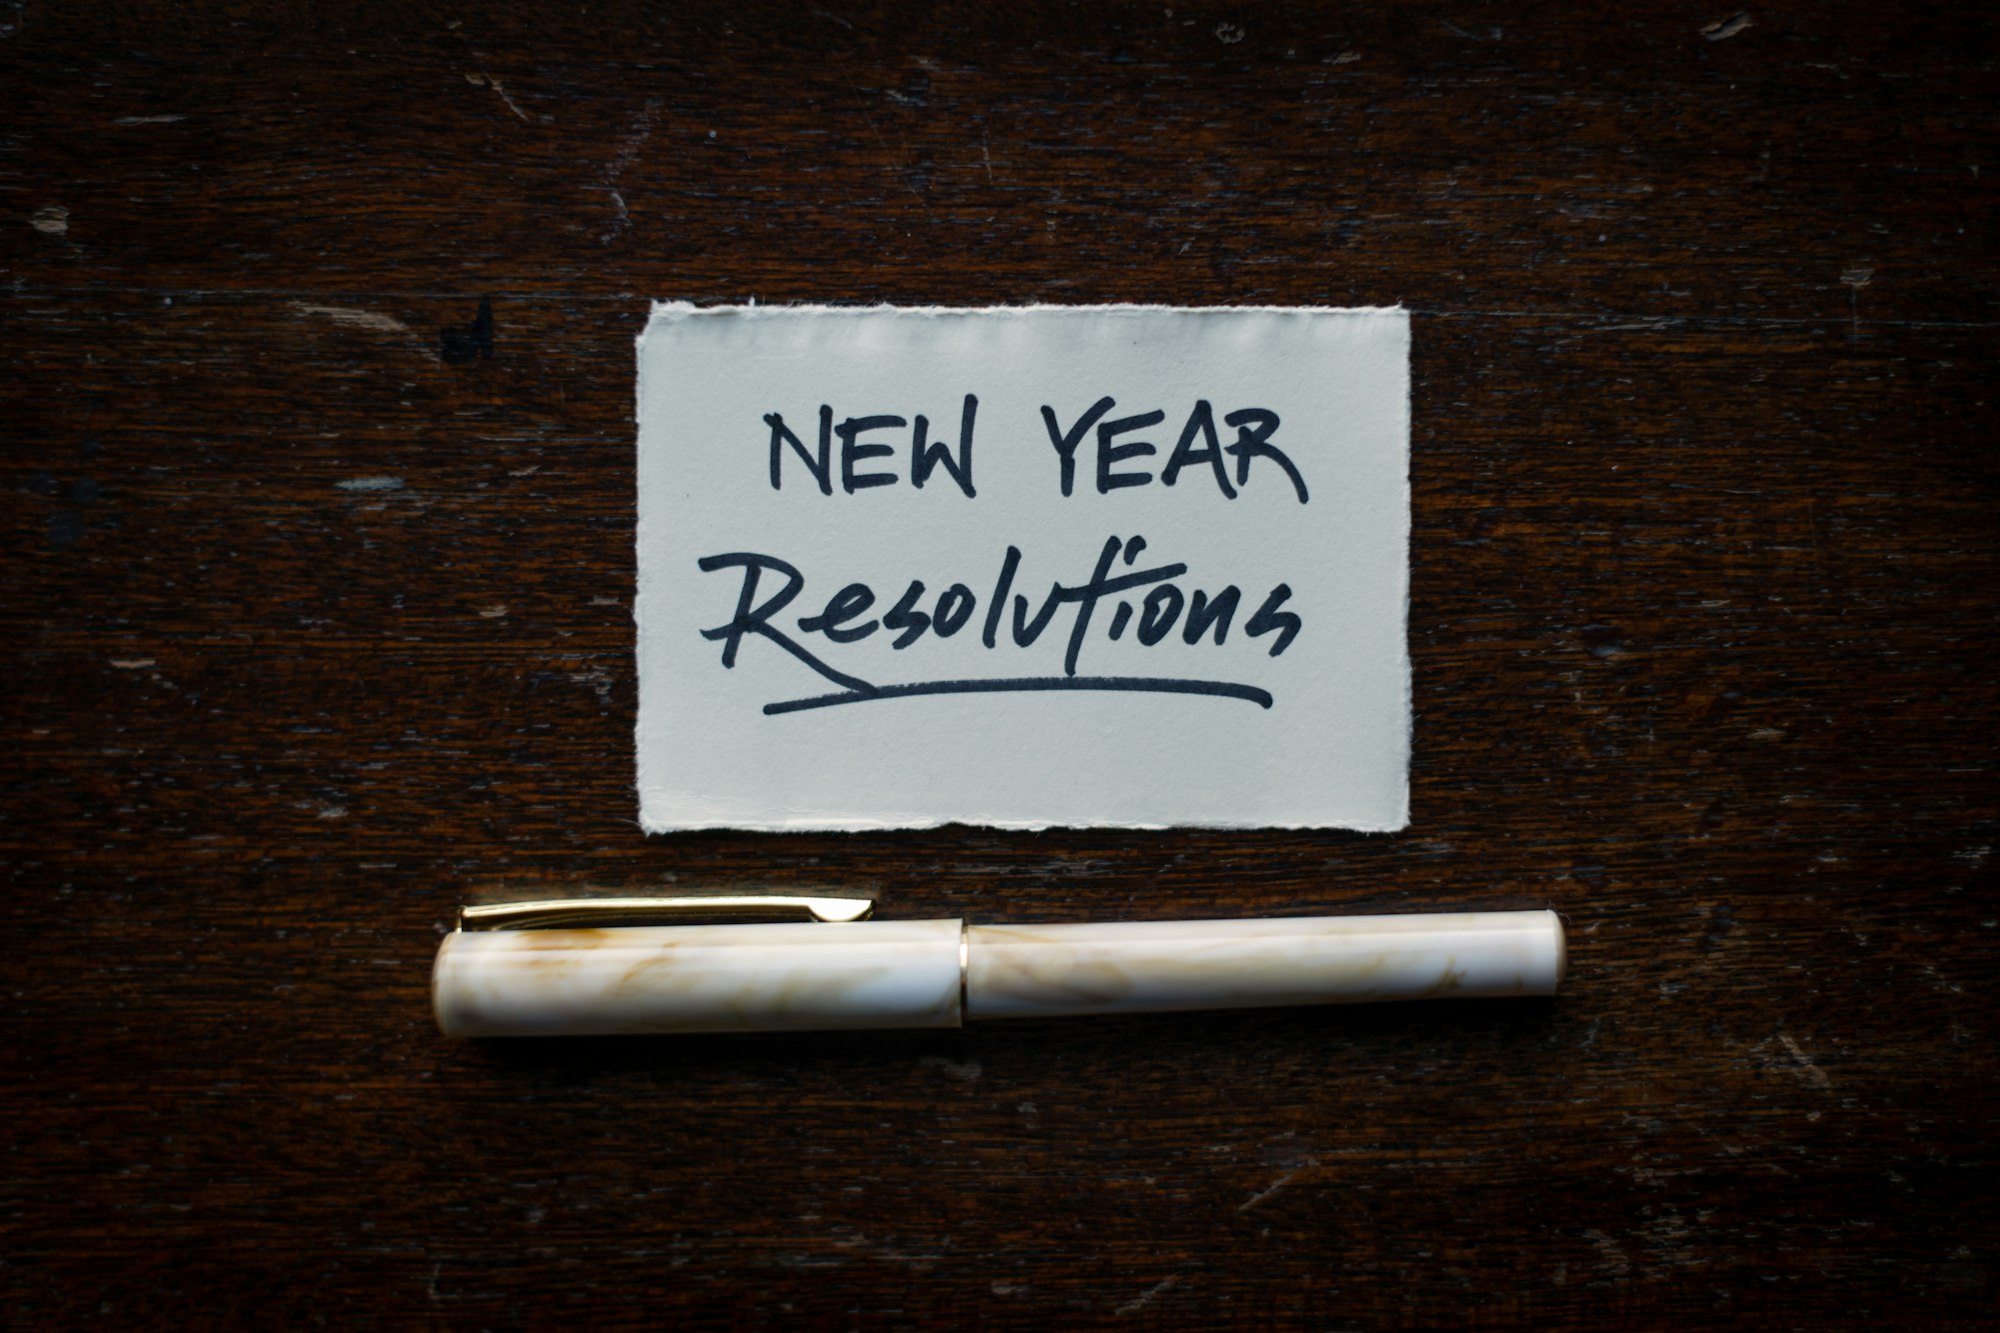 Imagen con un bolígrafo y un recorte de papel con las palabras "New Year Resolutions"